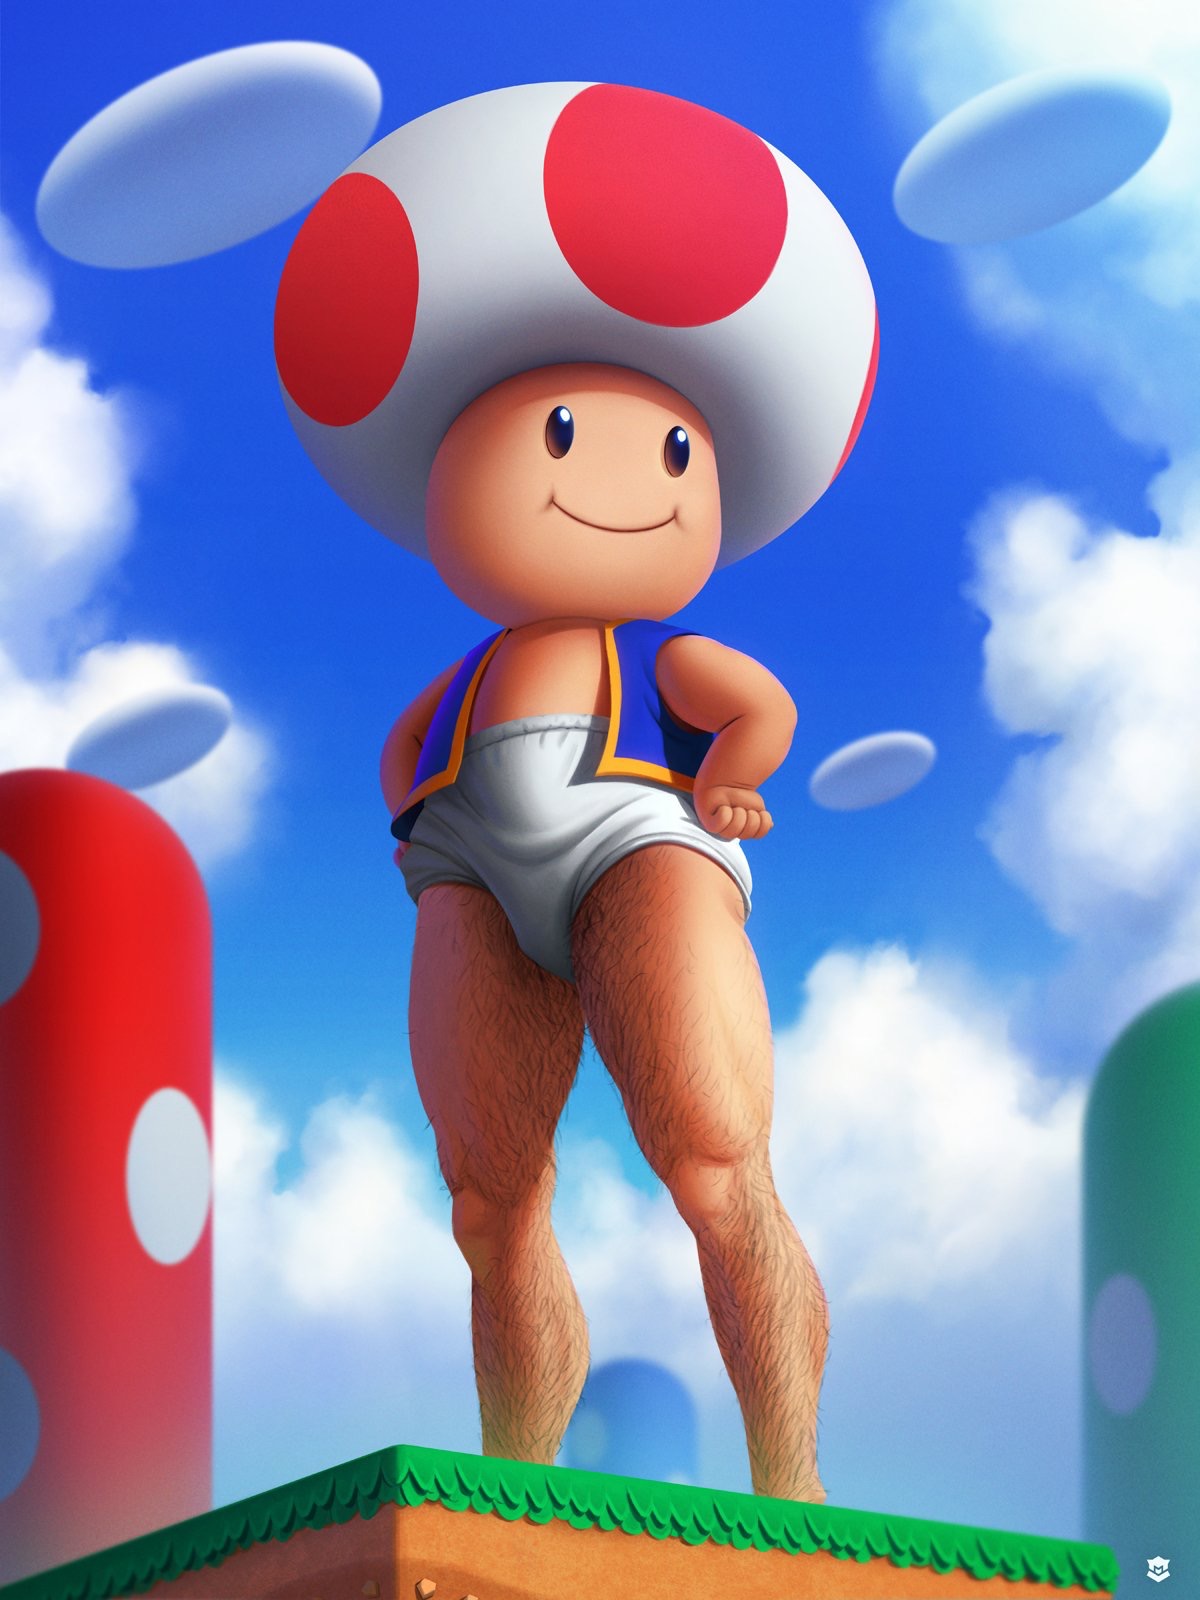 Fully grown mushroom man character